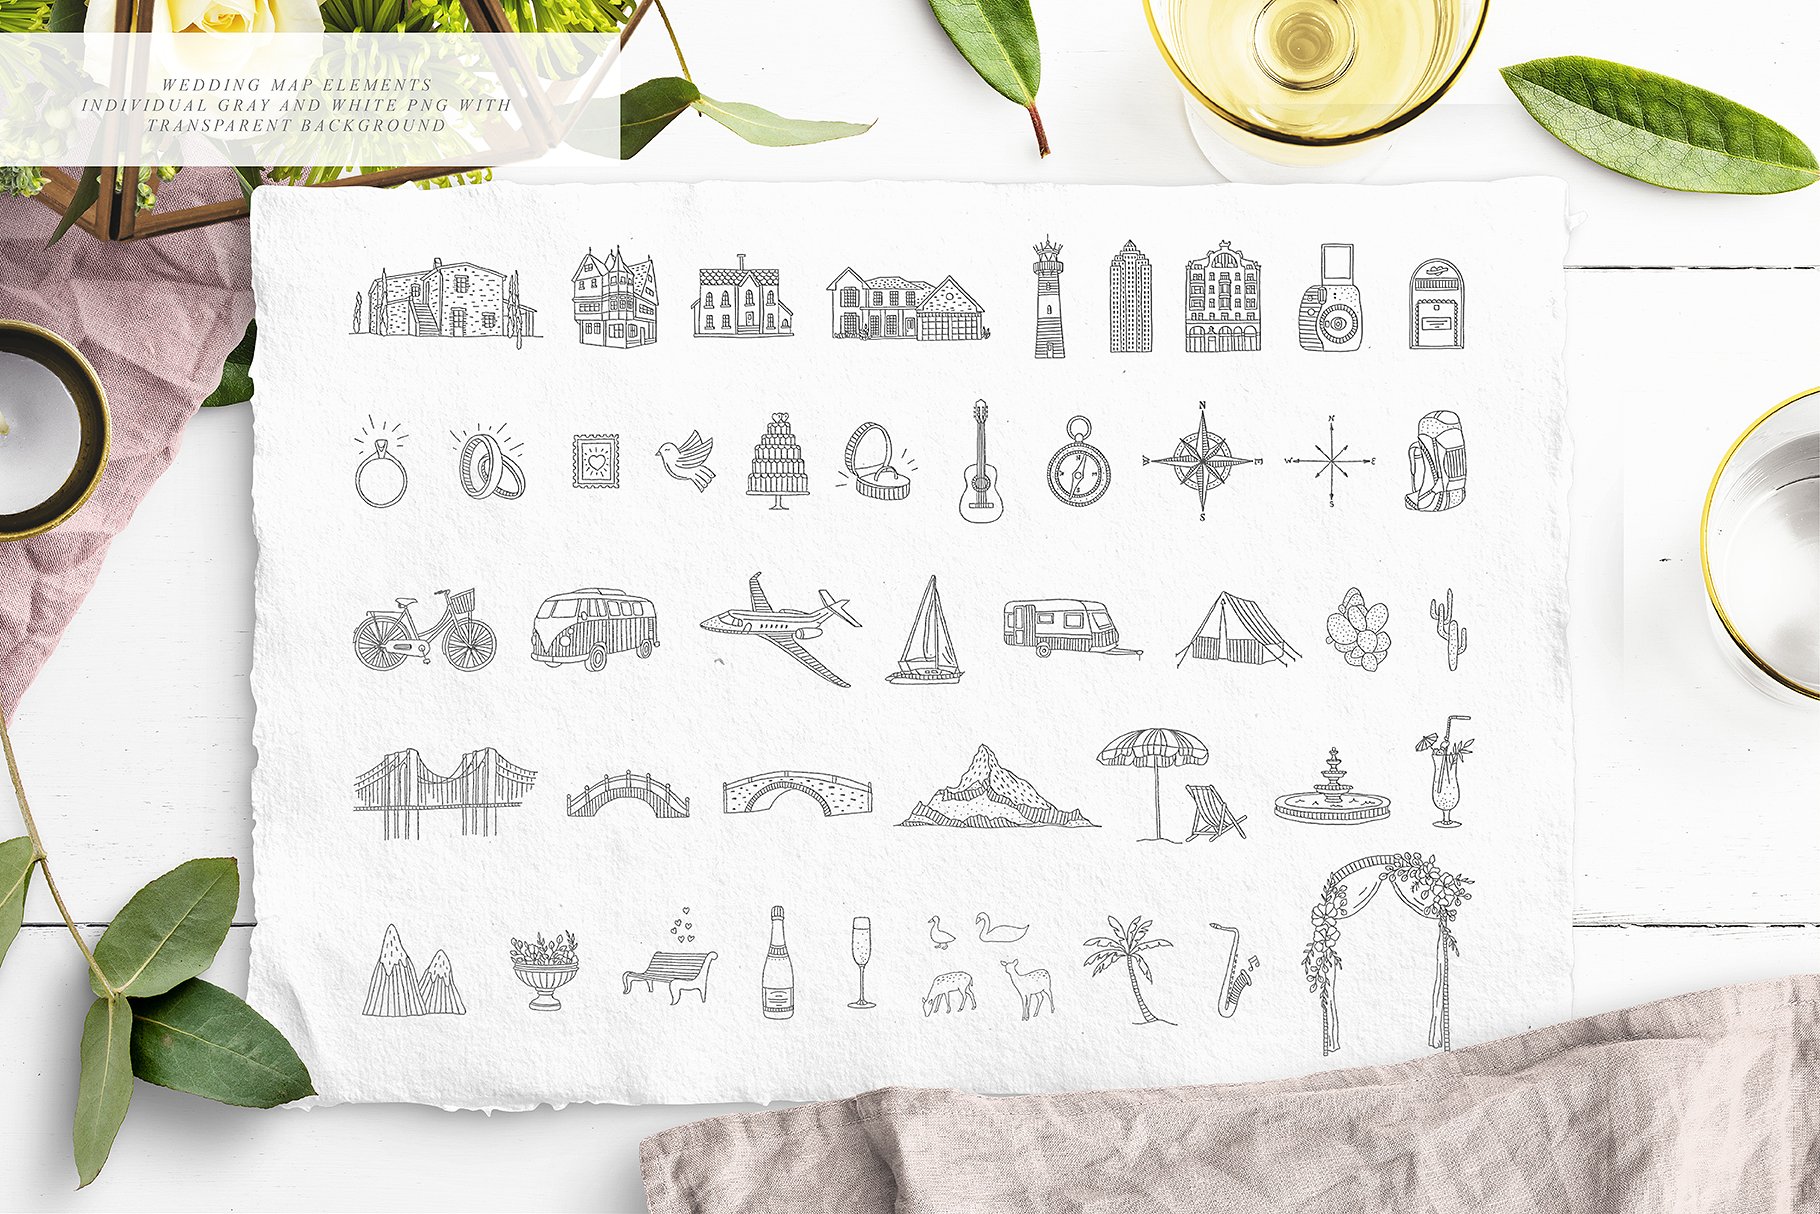 创意文艺风格婚礼邀请函地图设计素材包 Wedding Map Creator Collection插图(7)